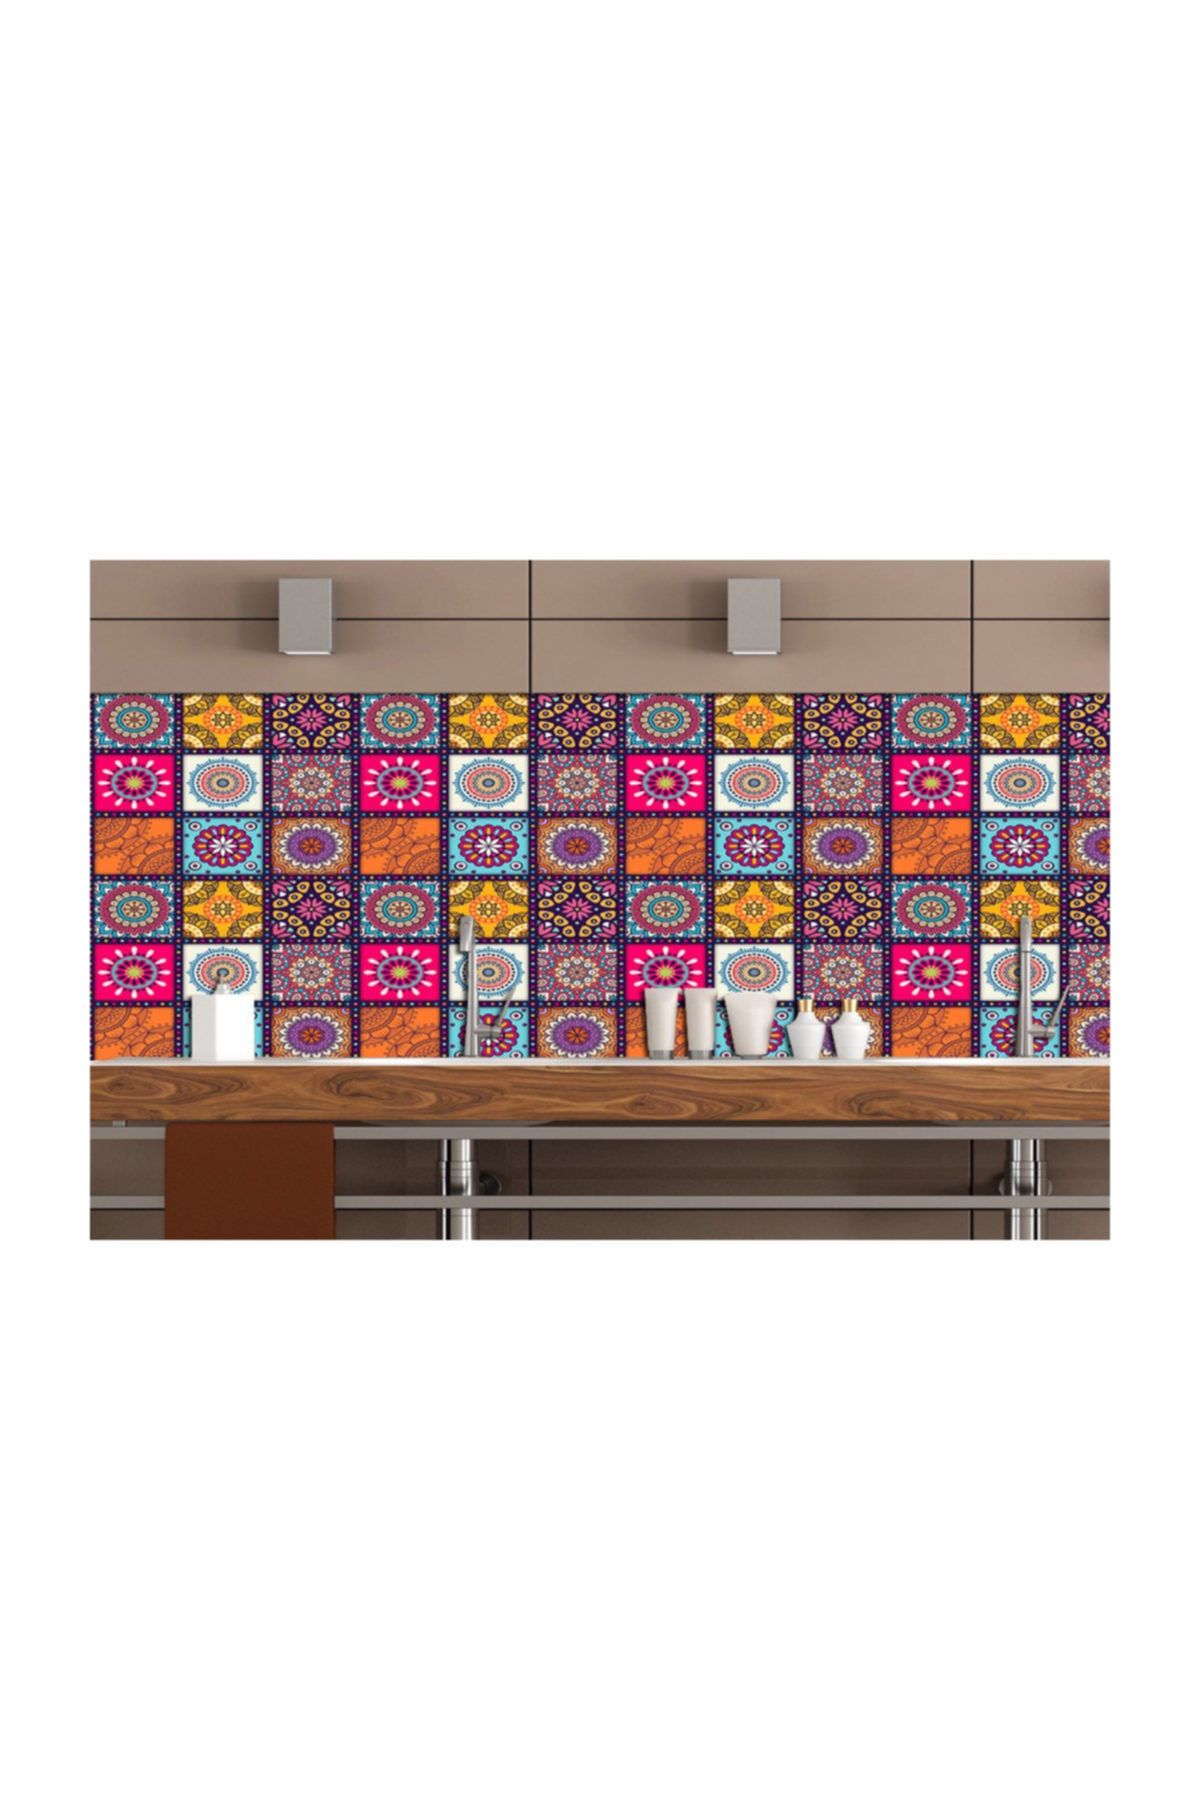 Naz Konsept Fayans Görünümlü Mutfak Ara Panel Stickerları